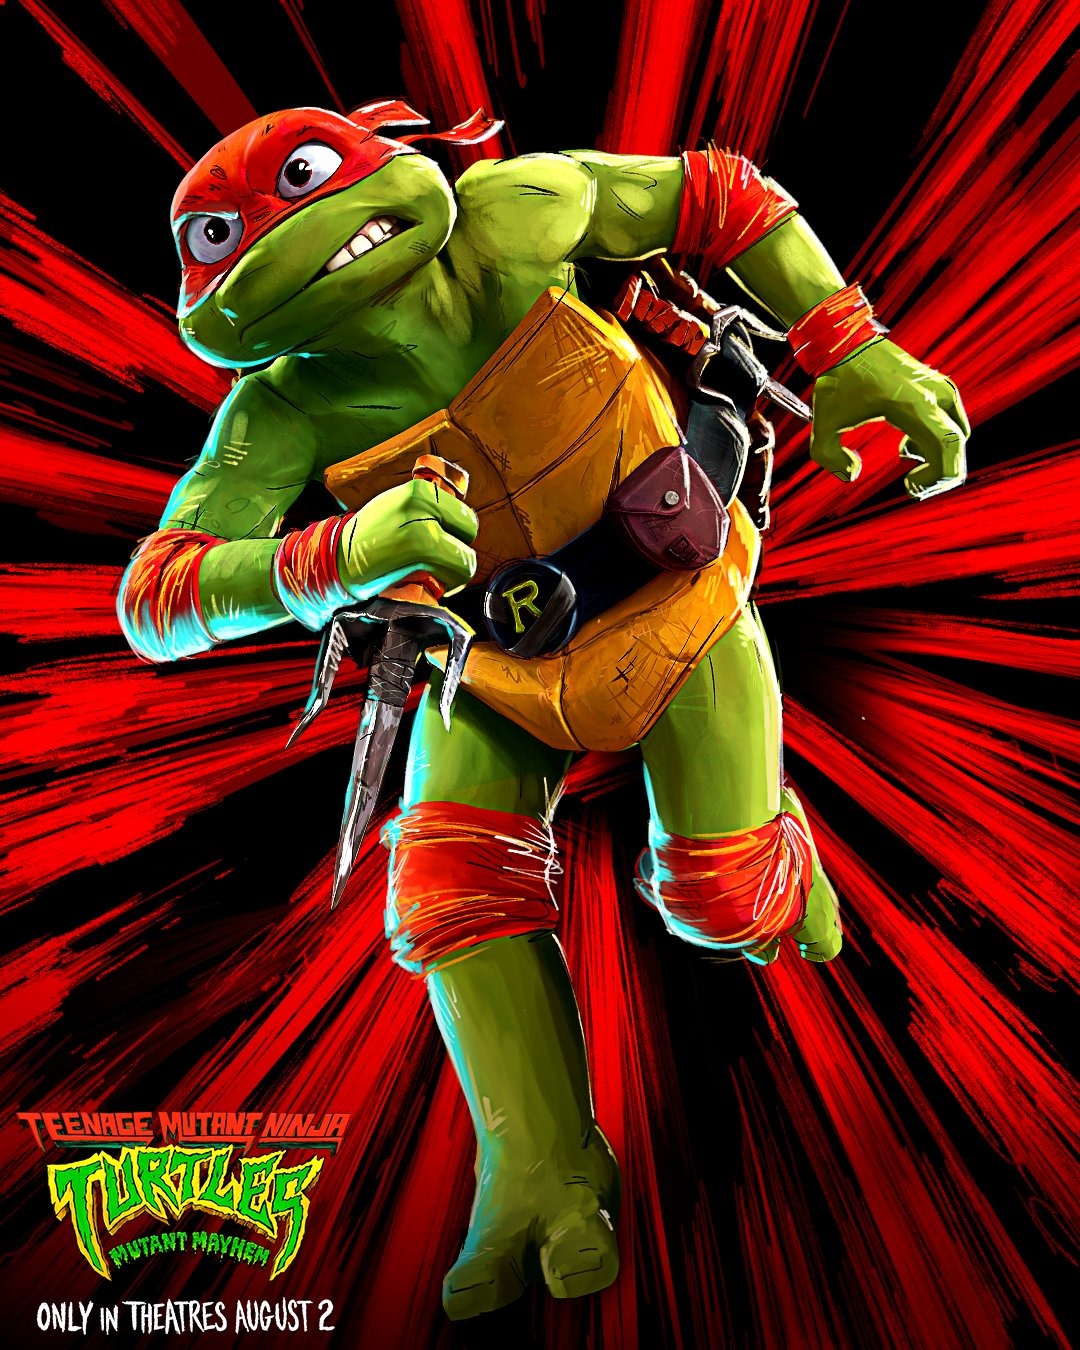 Extra Large Movie Poster Image for Teenage Mutant Ninja Turtles: Mutant Mayhem (#43 of 48)